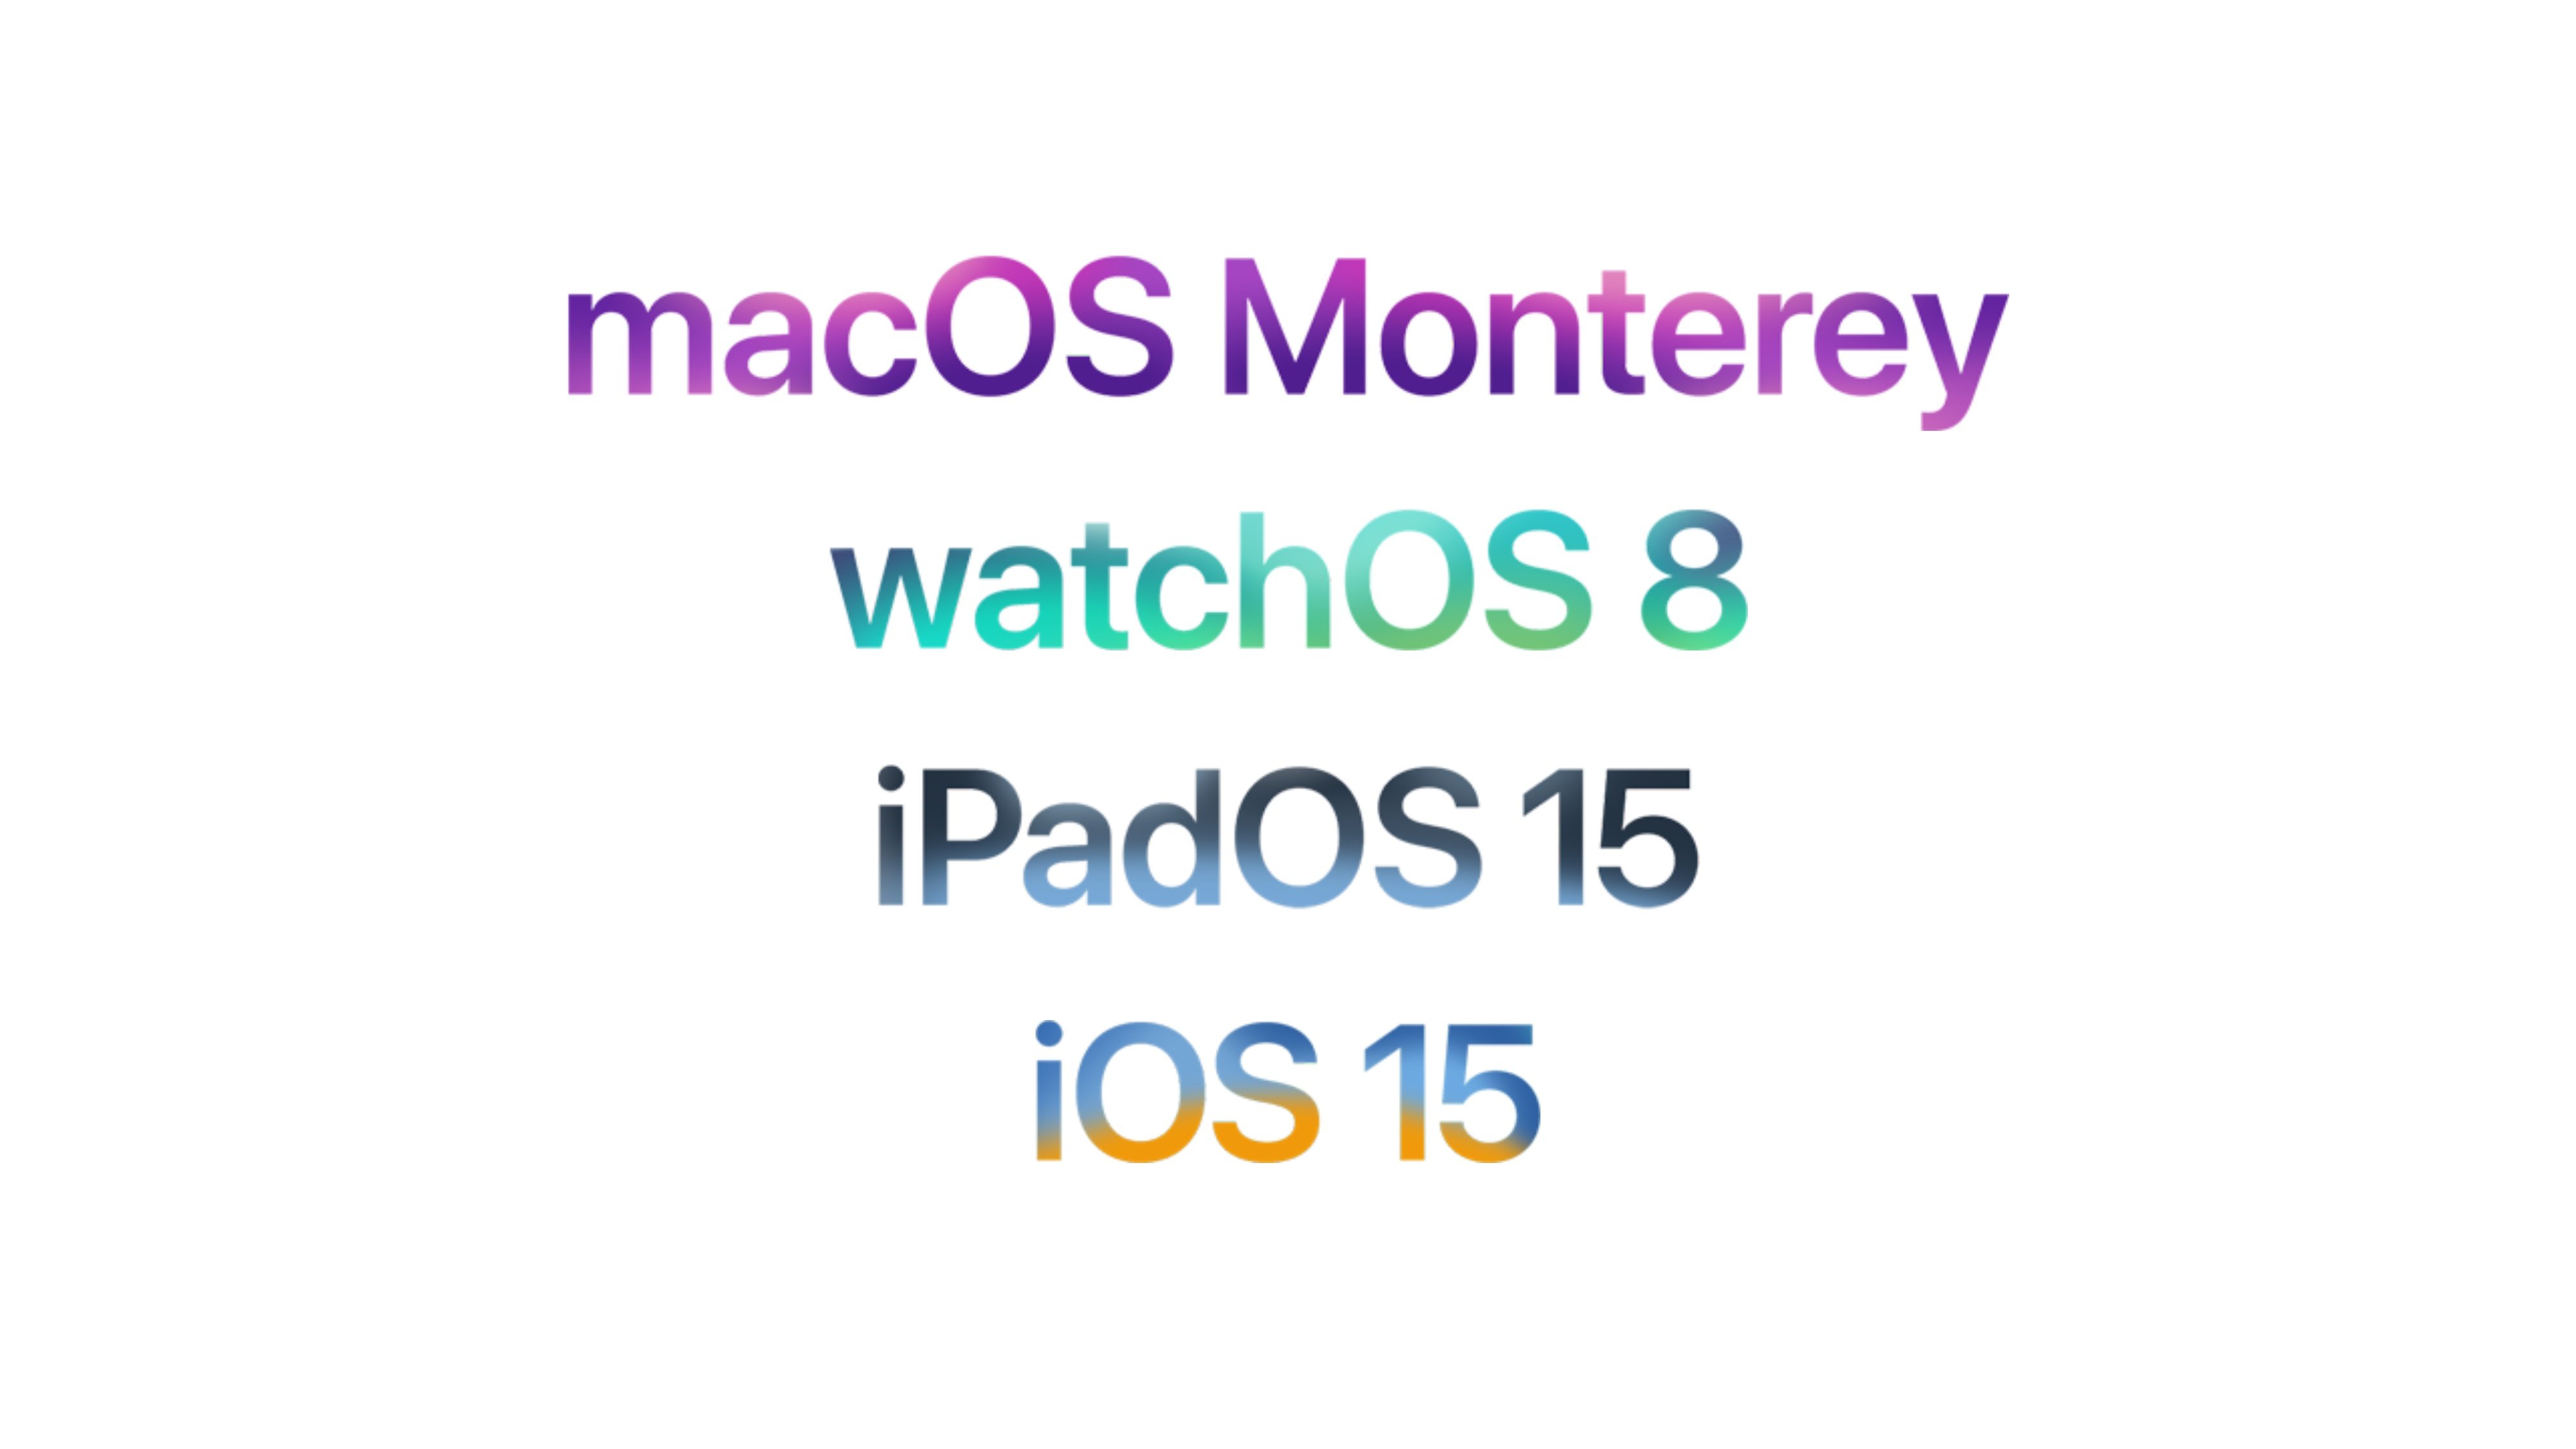 Apple macOS Monterey watchOS 8 iPadOS 15 iOS 15 Featured